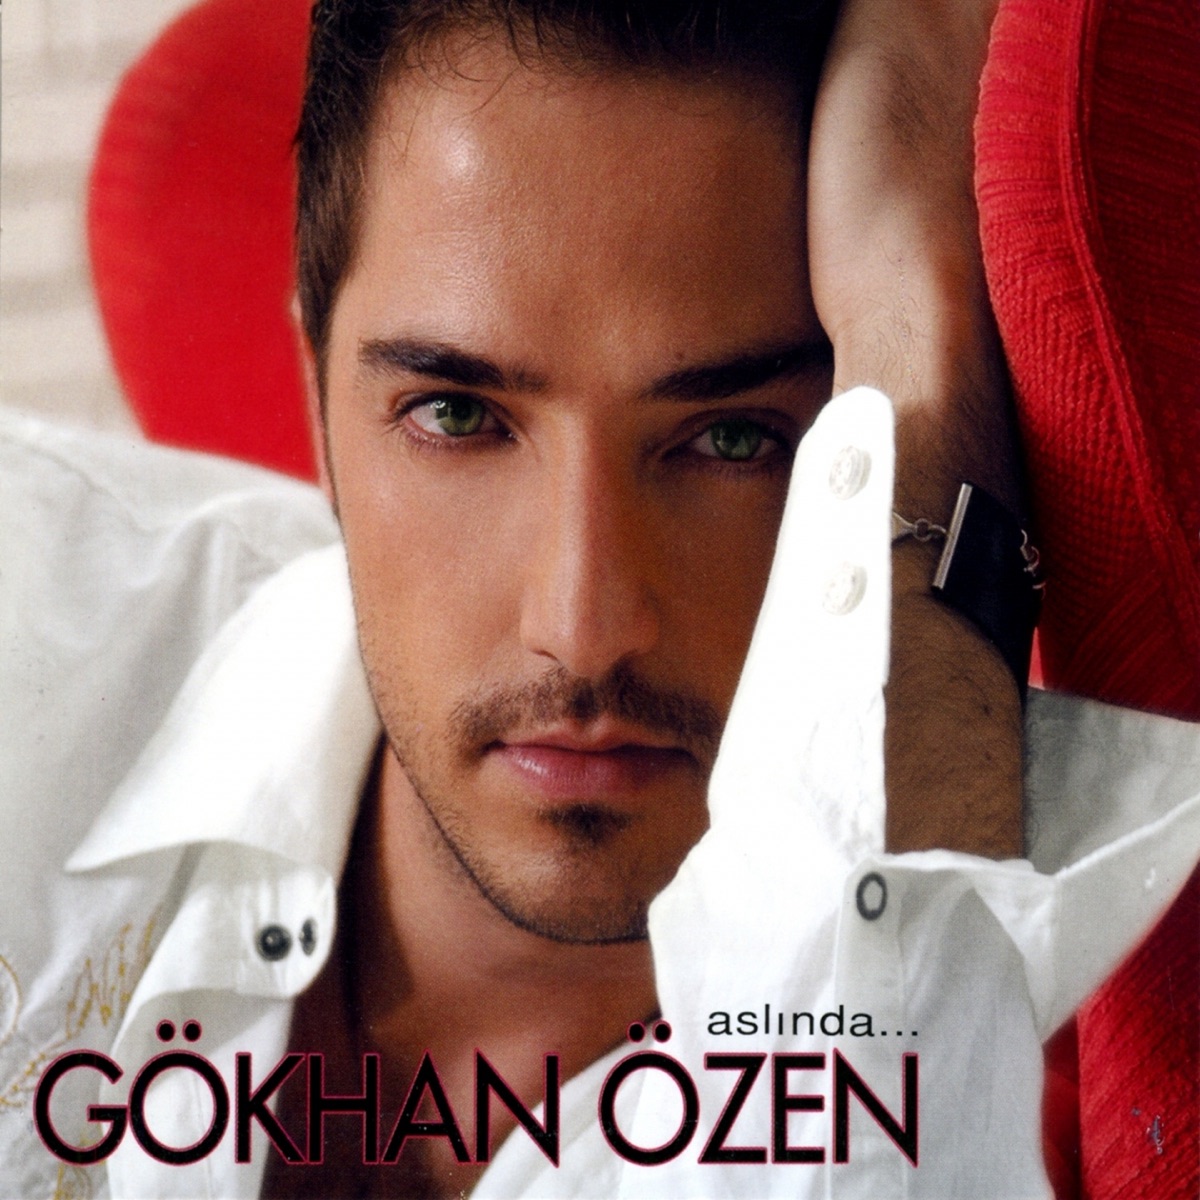 دانلود آلبوم gokhan ozen بنام Aslinda